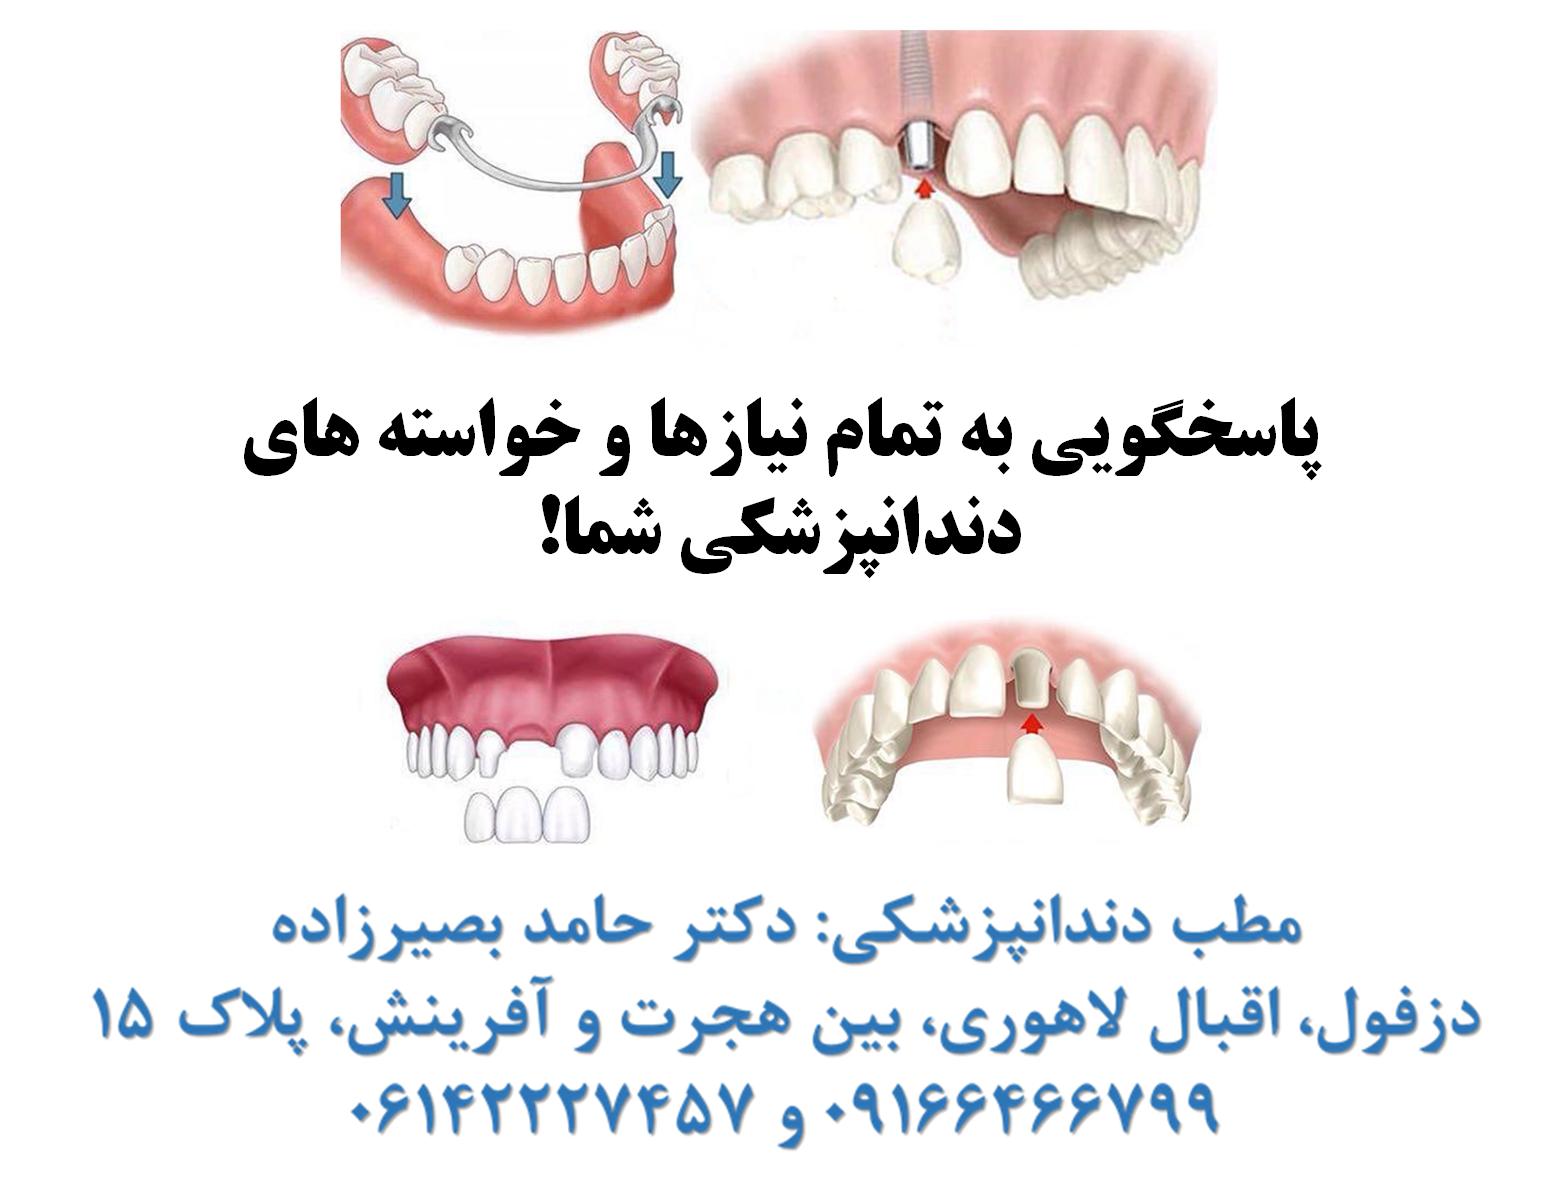 مطب دندانپزشکی دزفول- دکتر حامد بصیرزاده جراح و دندانپزشک